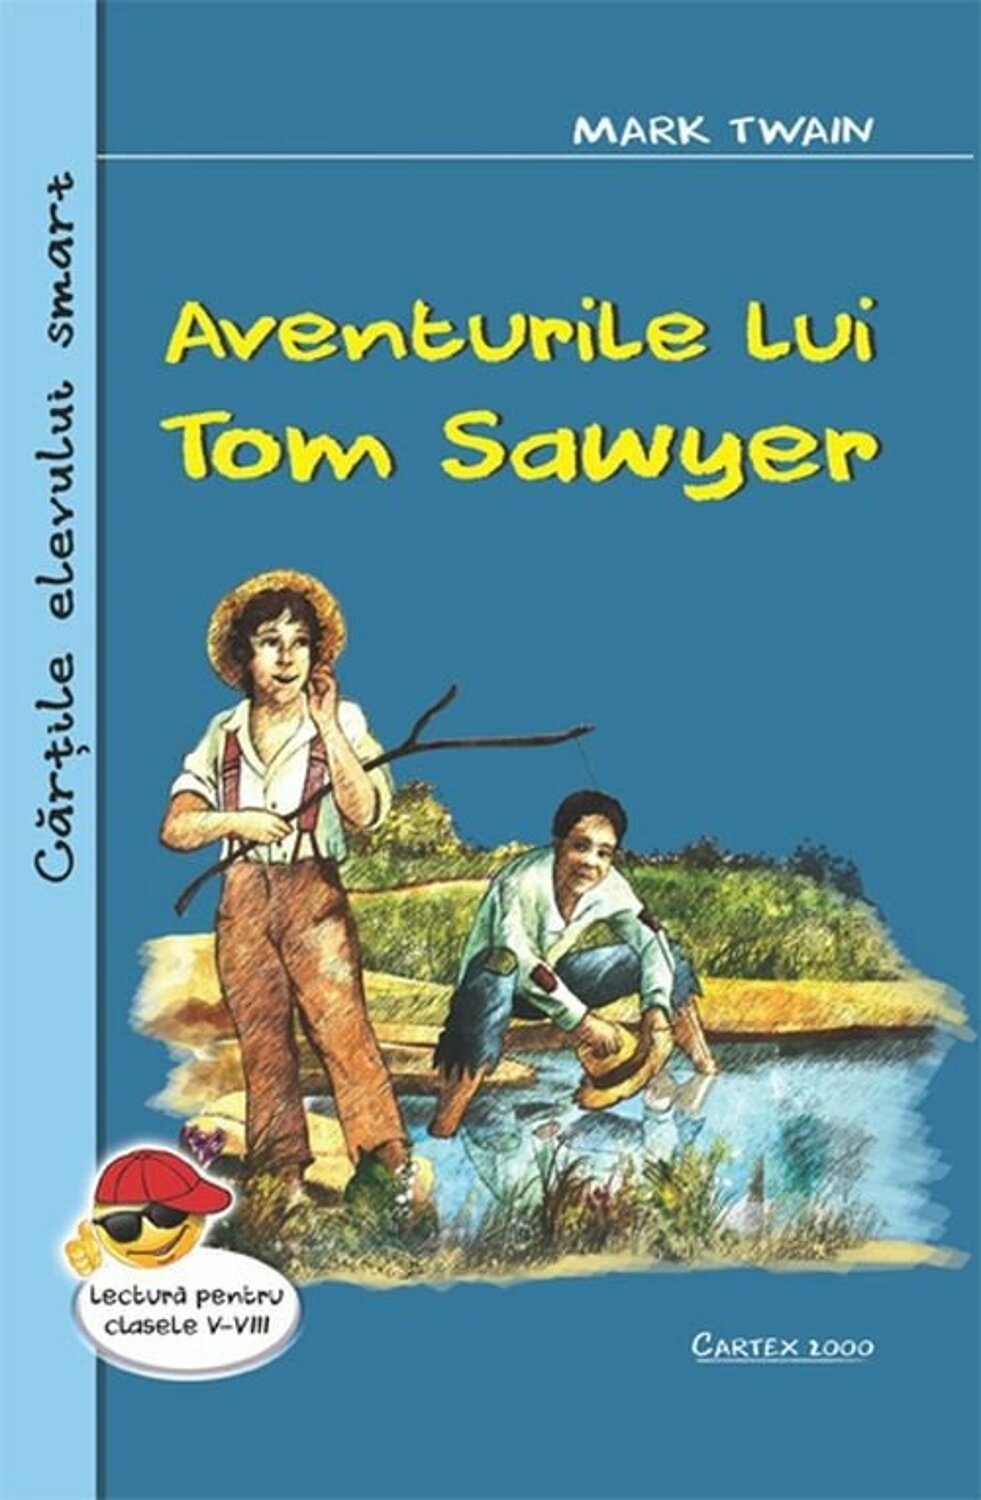 Fragmentul zilei - 1 iunie 2020: Aventurile lui Tom Sawyer - Mark Twain - Fragmente și citate din cărți